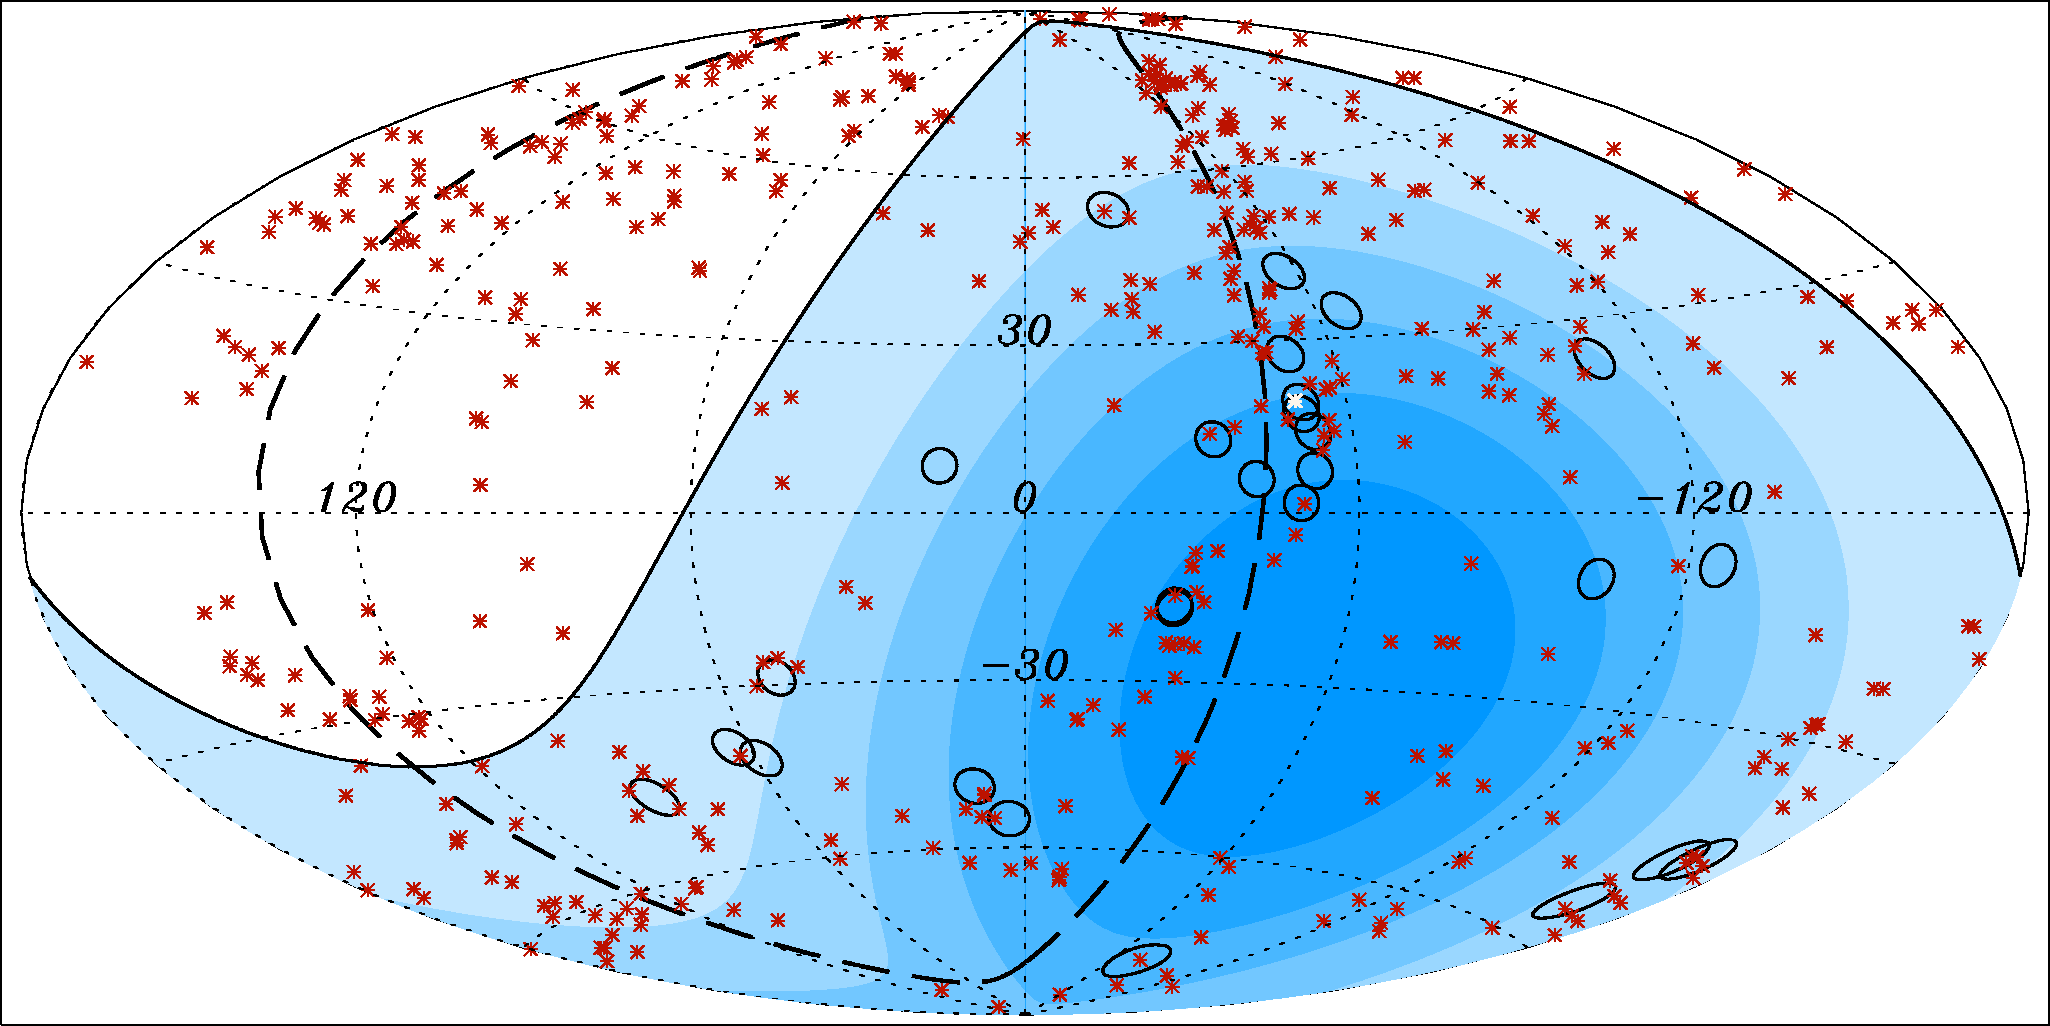 De rode kruisjes geven de positie aan de hemel van 472 actieve melkwegkernen (of AGN's); die staan binnen een afstand van een kleine 250 miljoen lichtjaar van ons vandaan. Het blauwe gedeelte - binnen de getrokken lijn - is het blikveld tot op 30 graden b